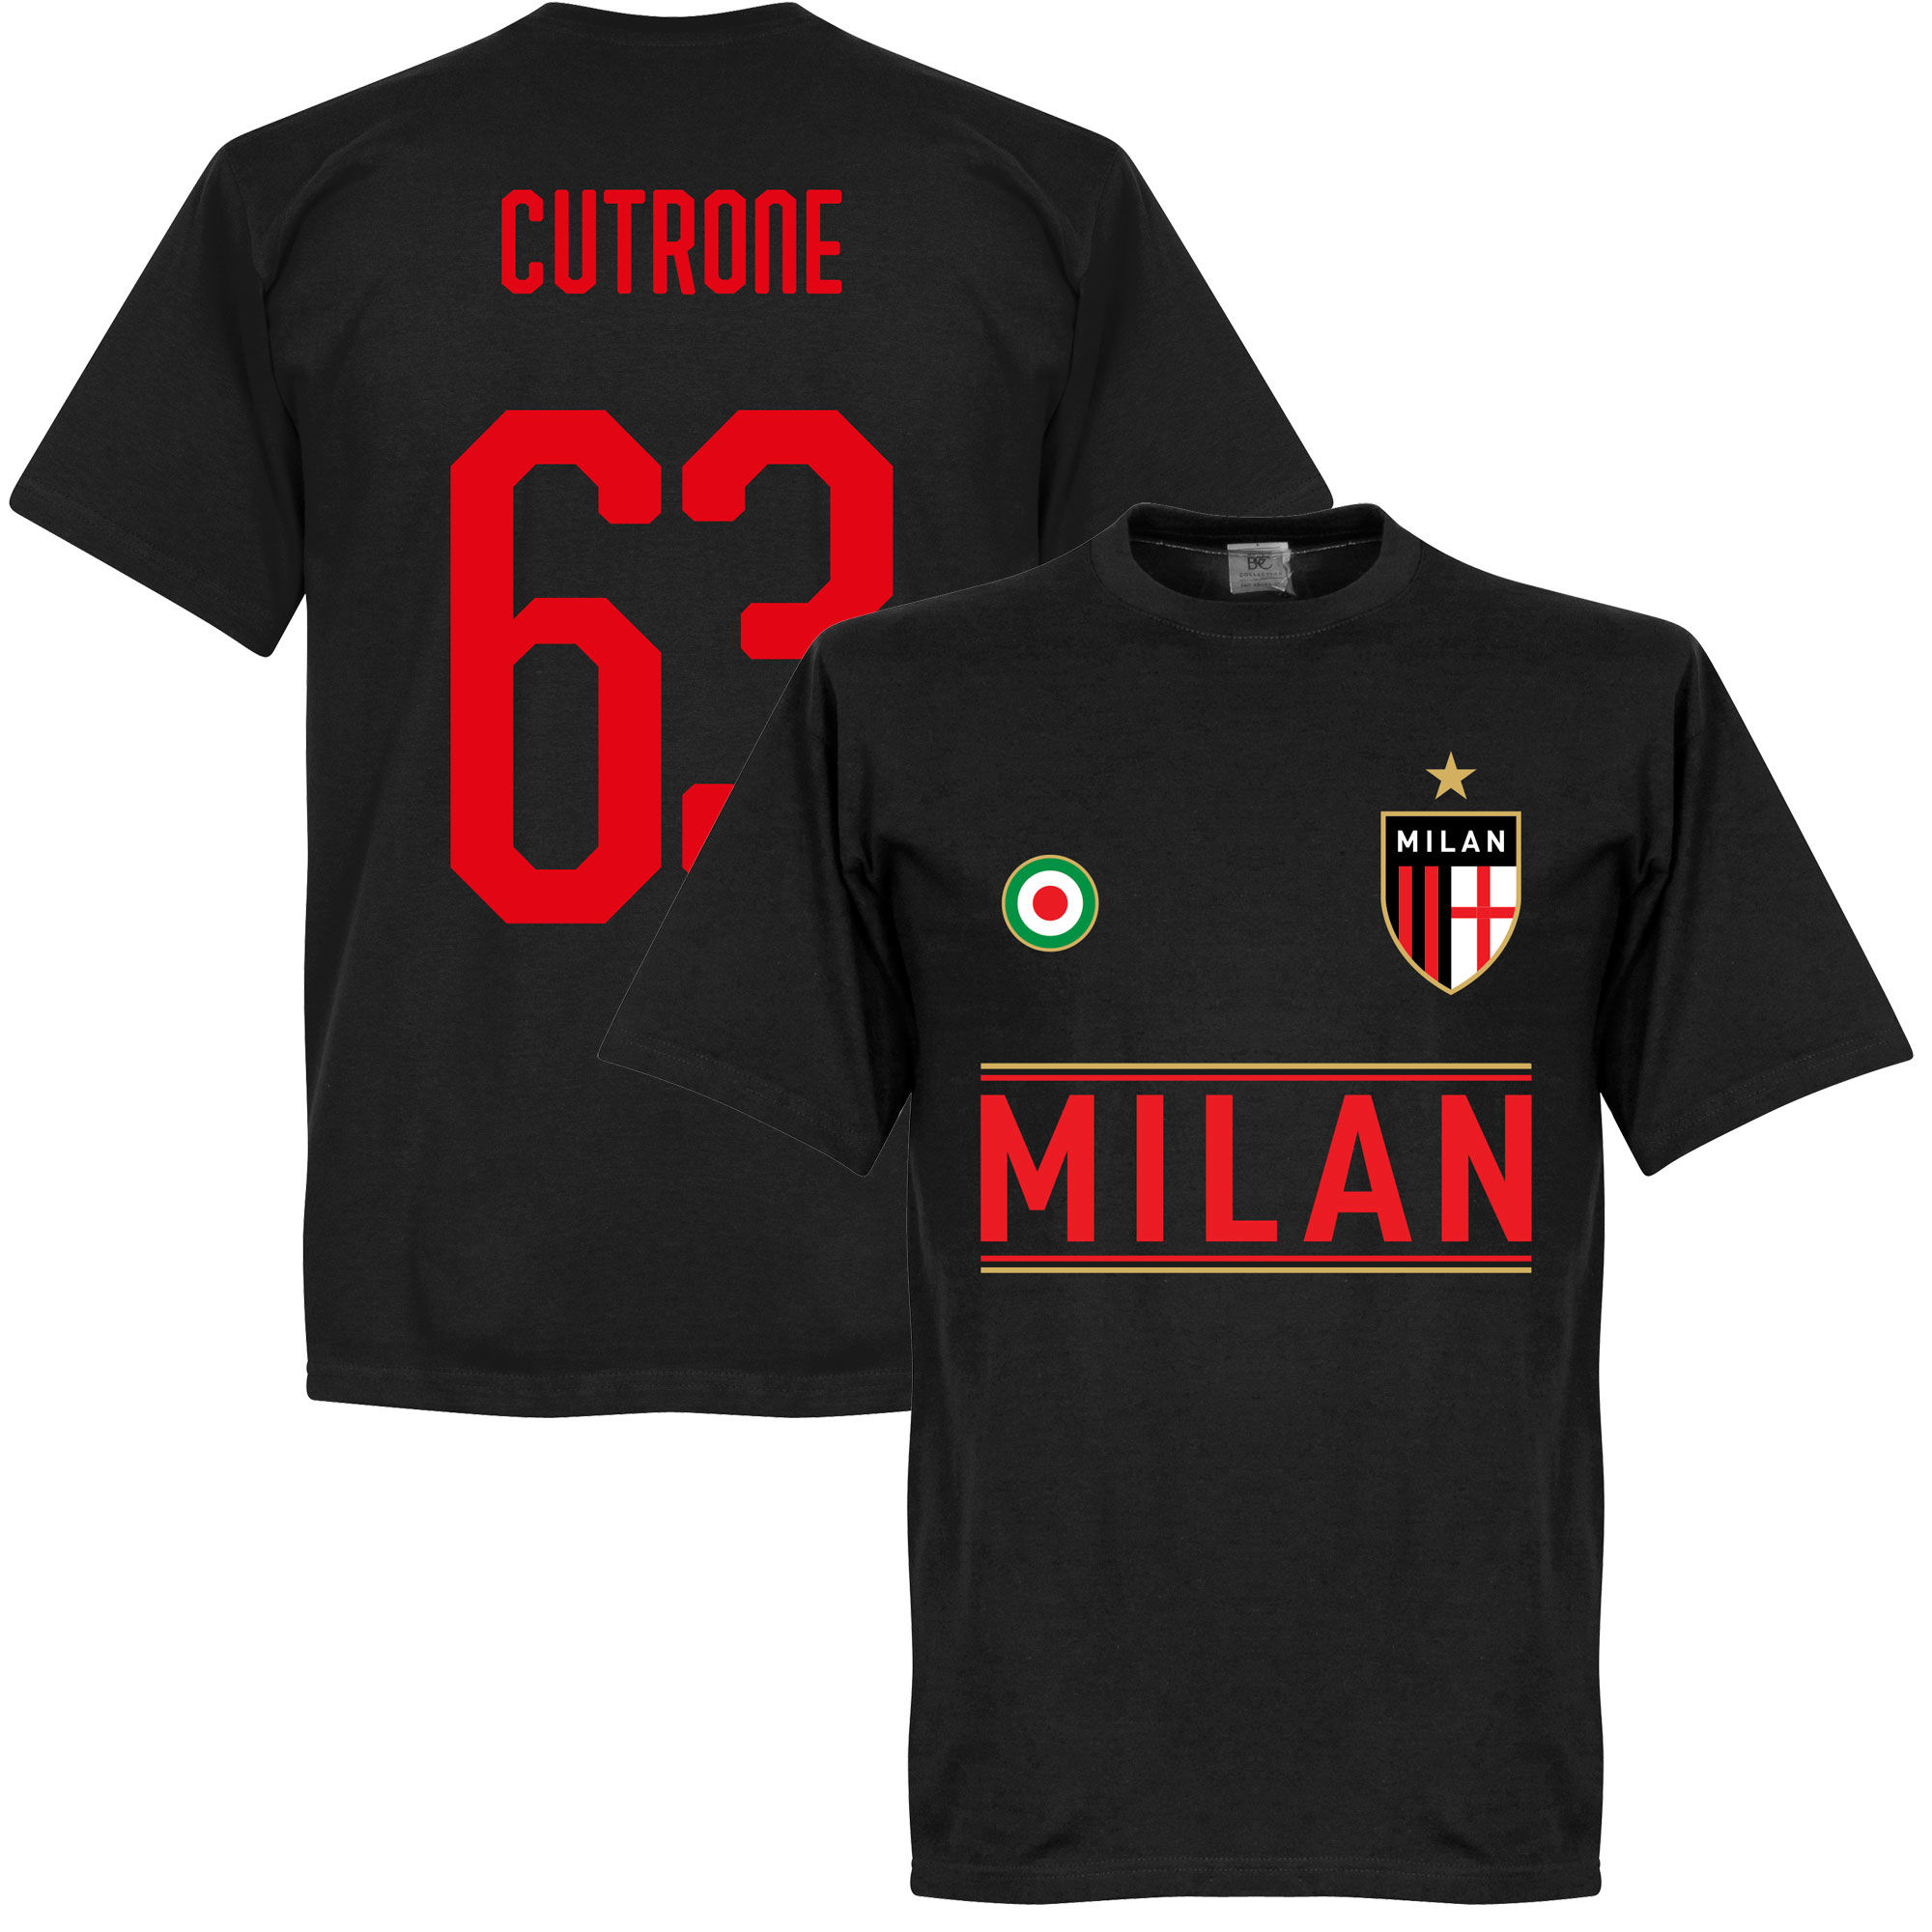 AC Milán - Tričko - černé, číslo 63, Patrick Cutrone